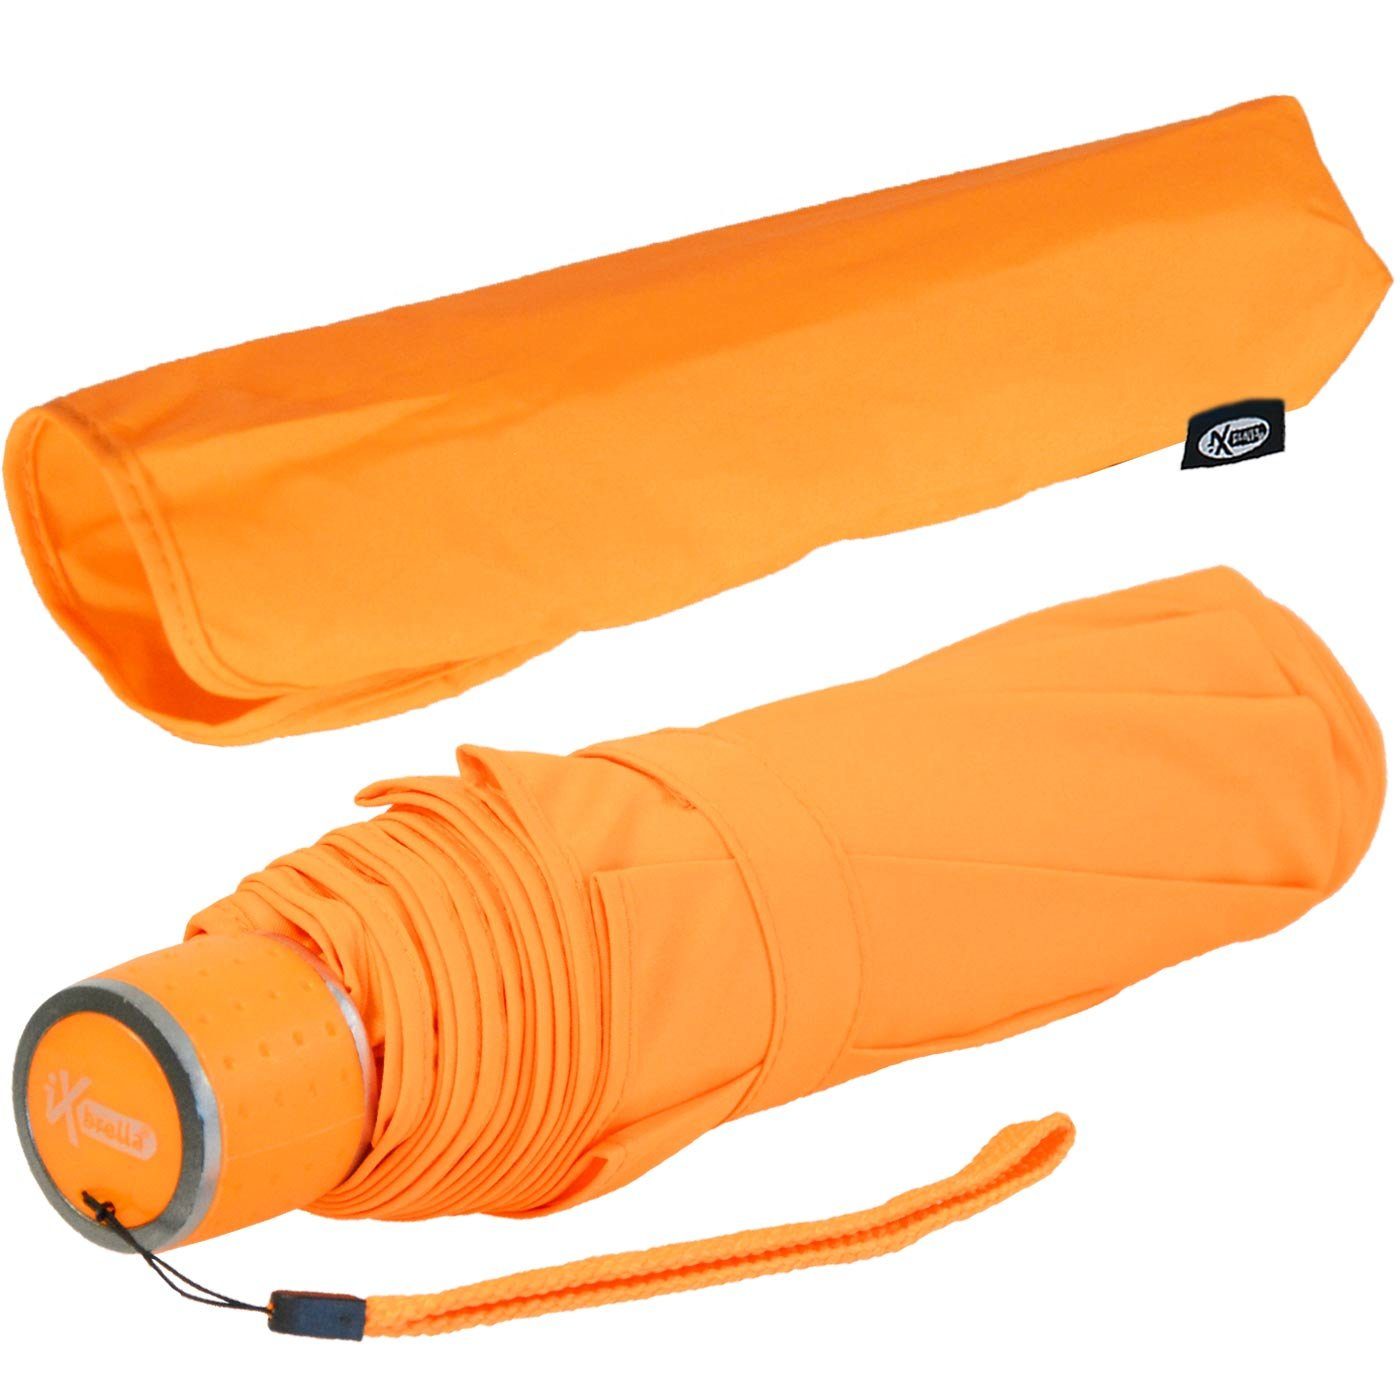 iX-brella Taschenregenschirm - Dach - Light Ultra farbenfroh mit extra leicht, großem neon-orange Mini